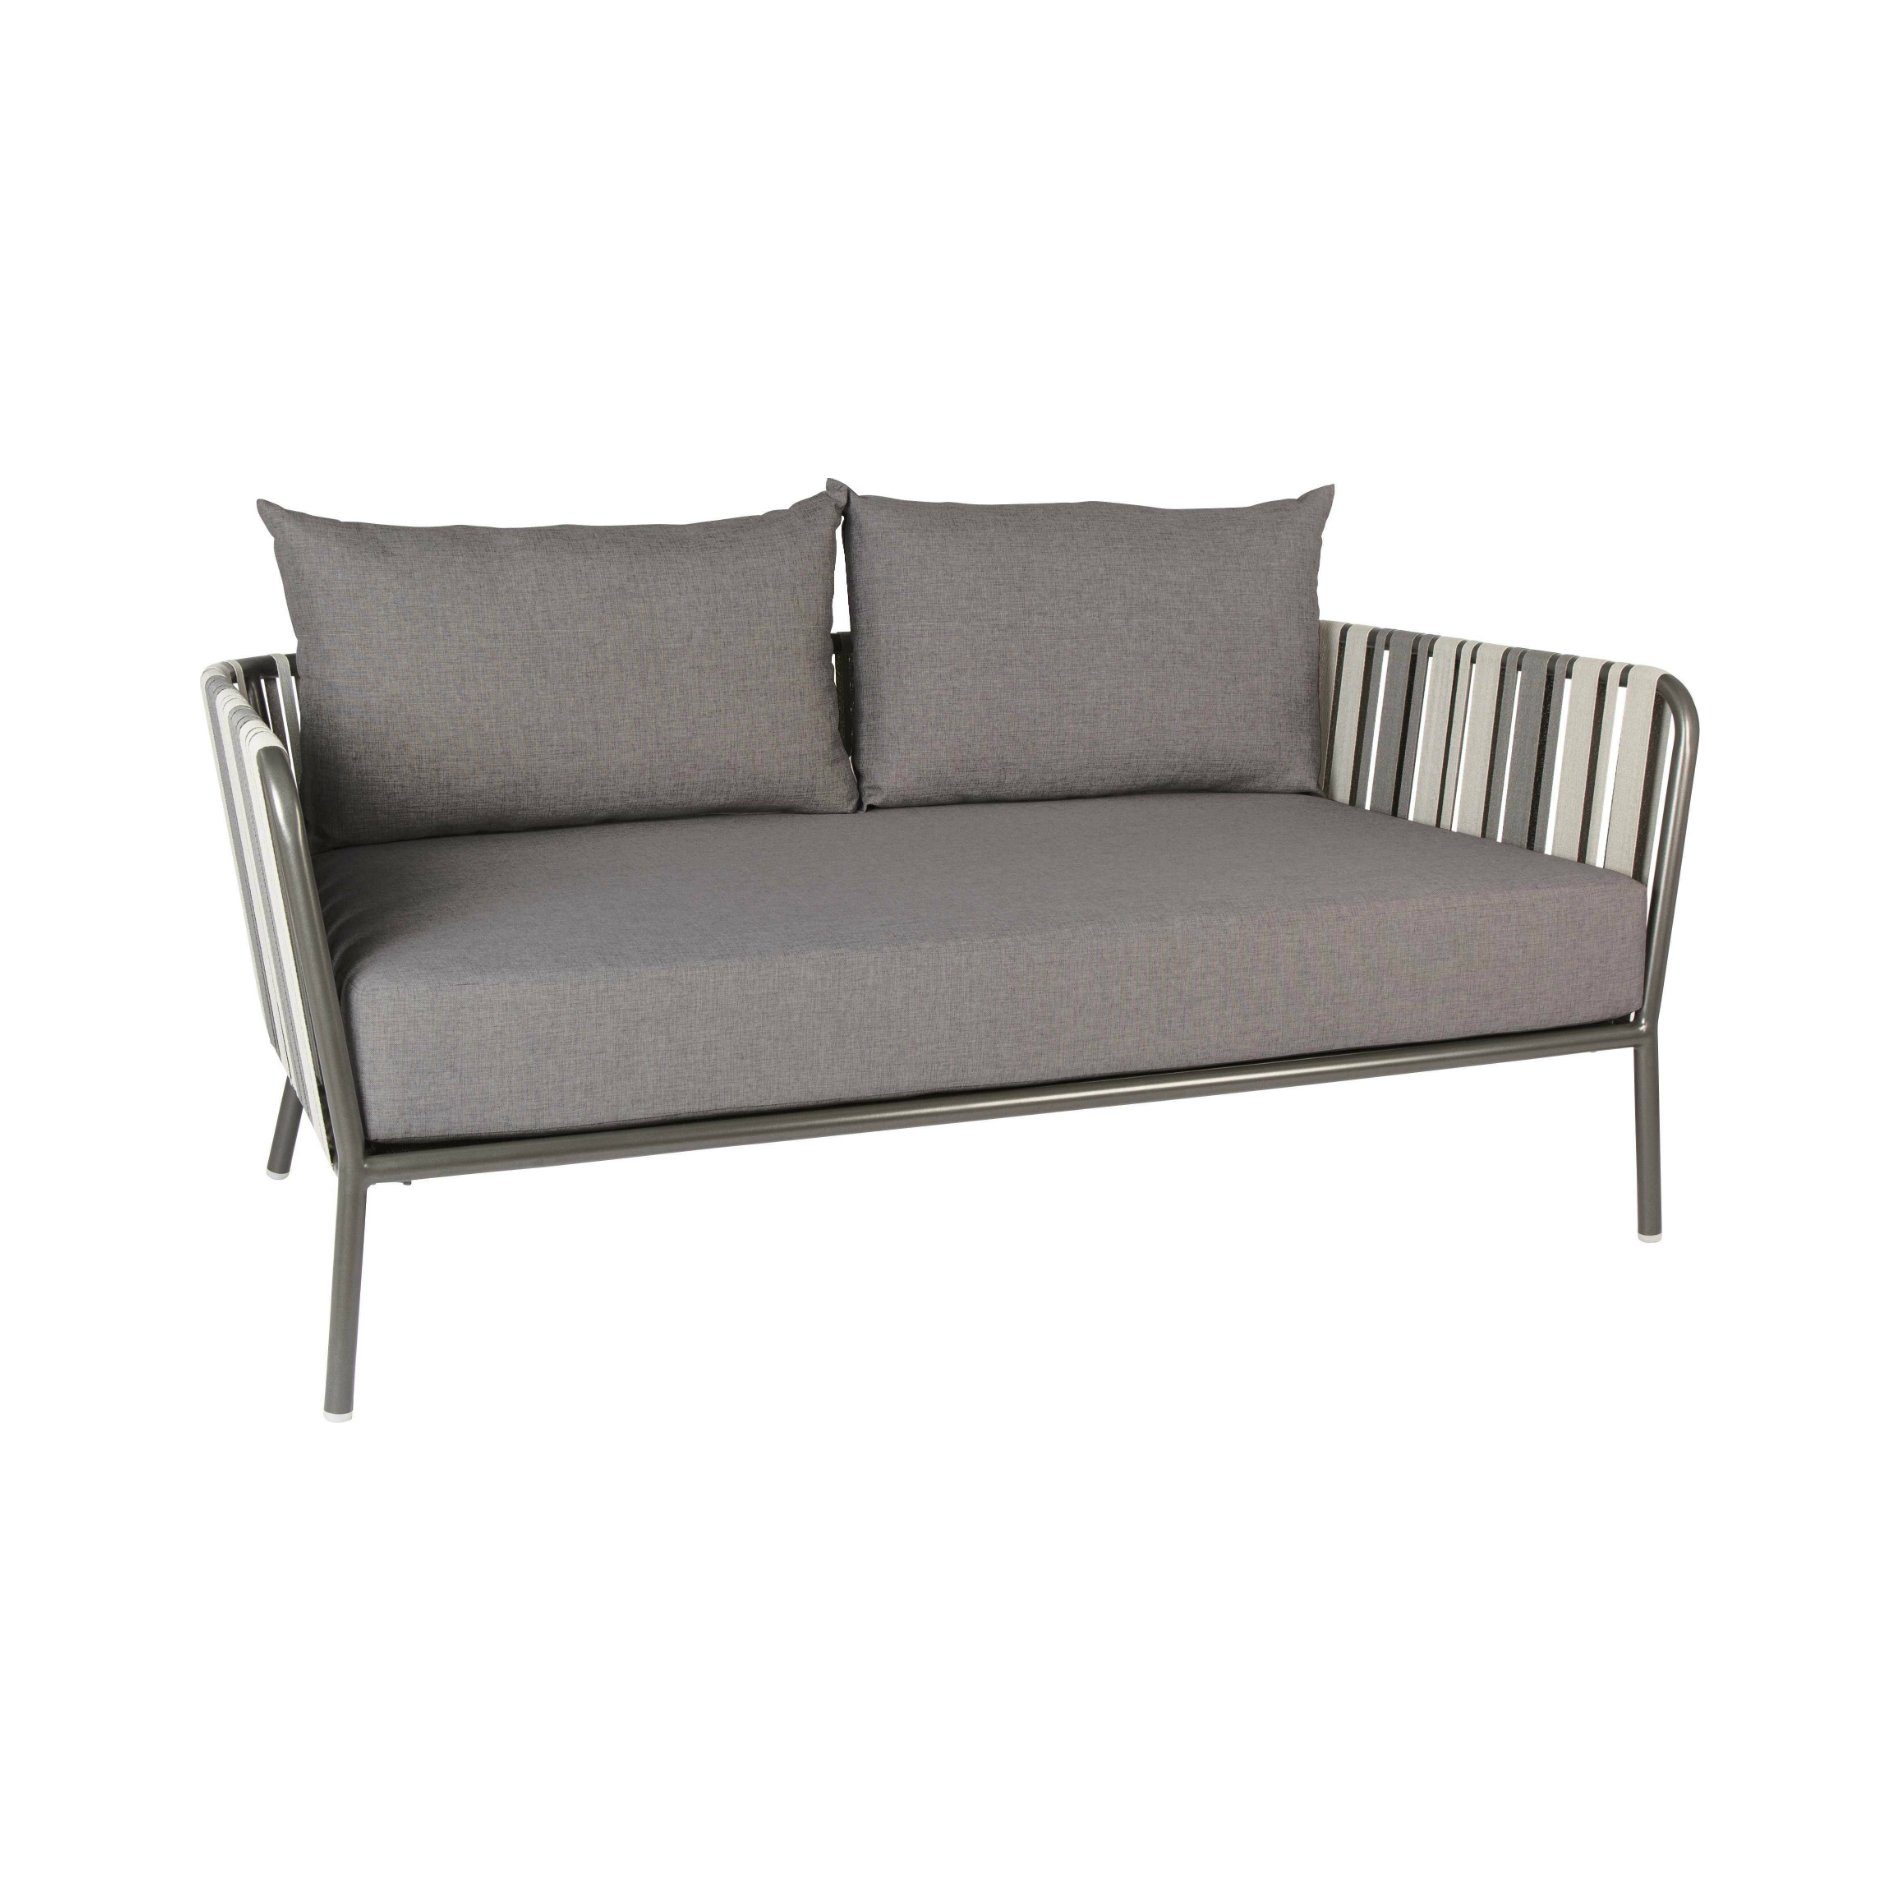 2-Sitzer Loungesofa von Stern, Gestell Aluminium anthrazit, Textilgewebe grau zweifarbig, Kissen dunkelgrau